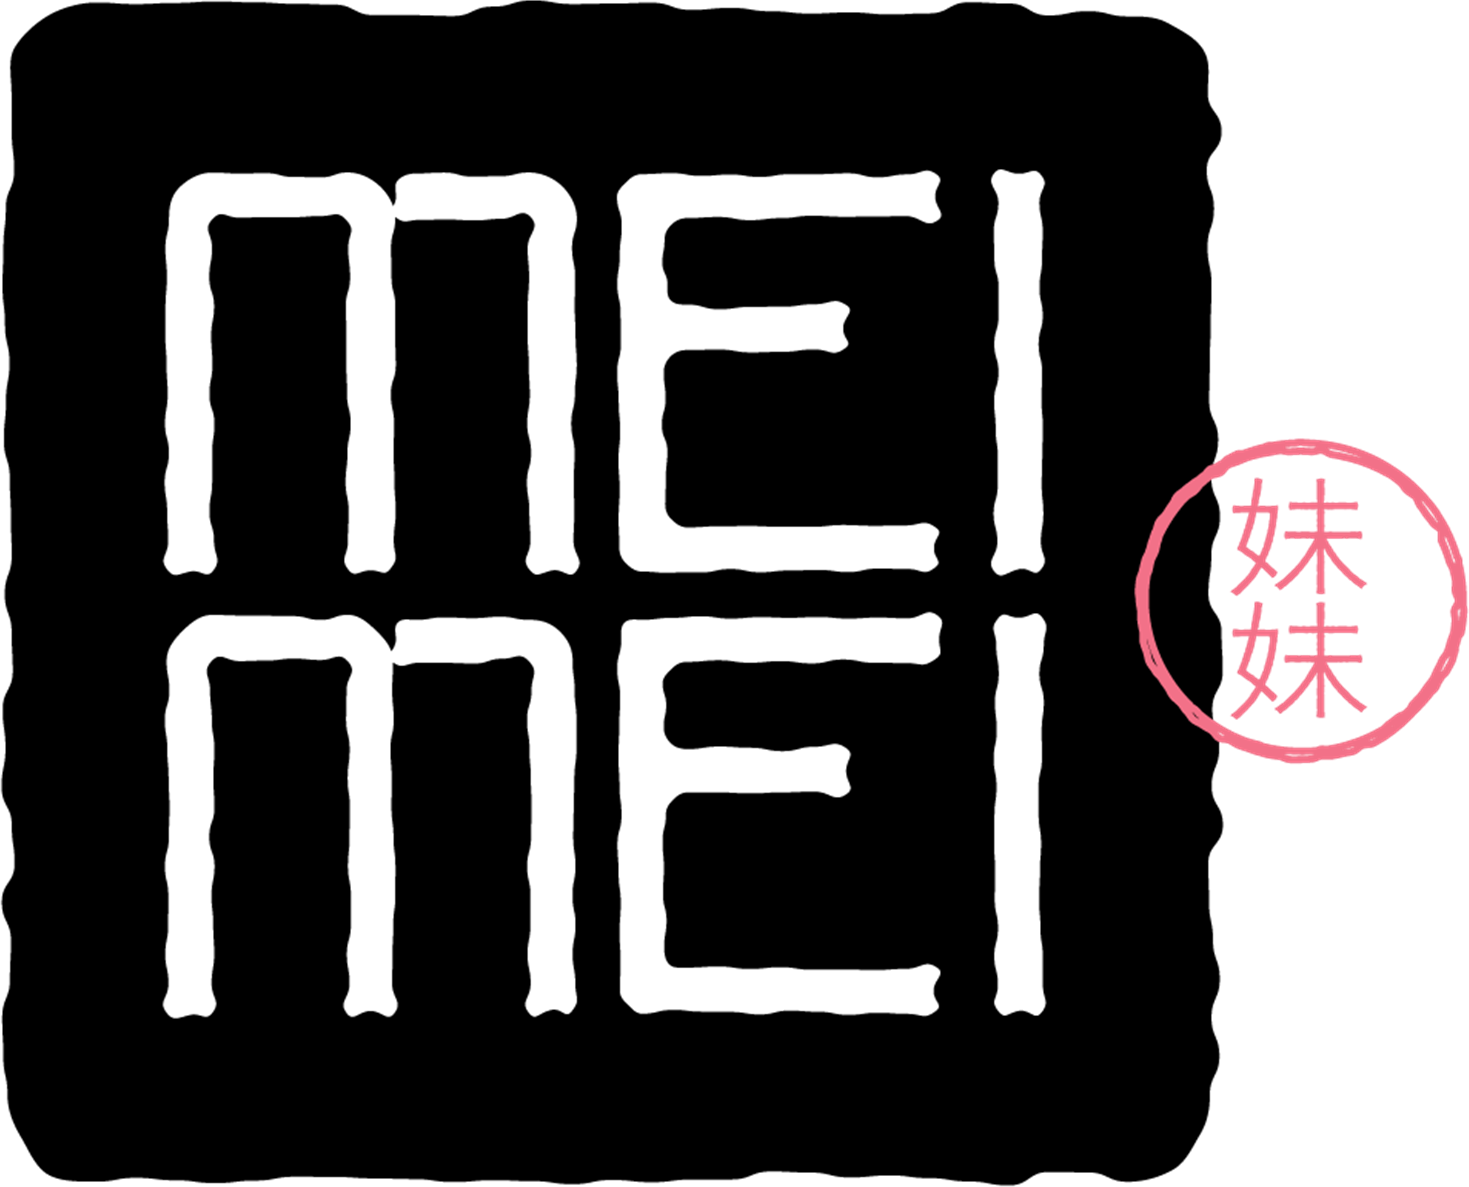 Mei Mei logo top - Homepage